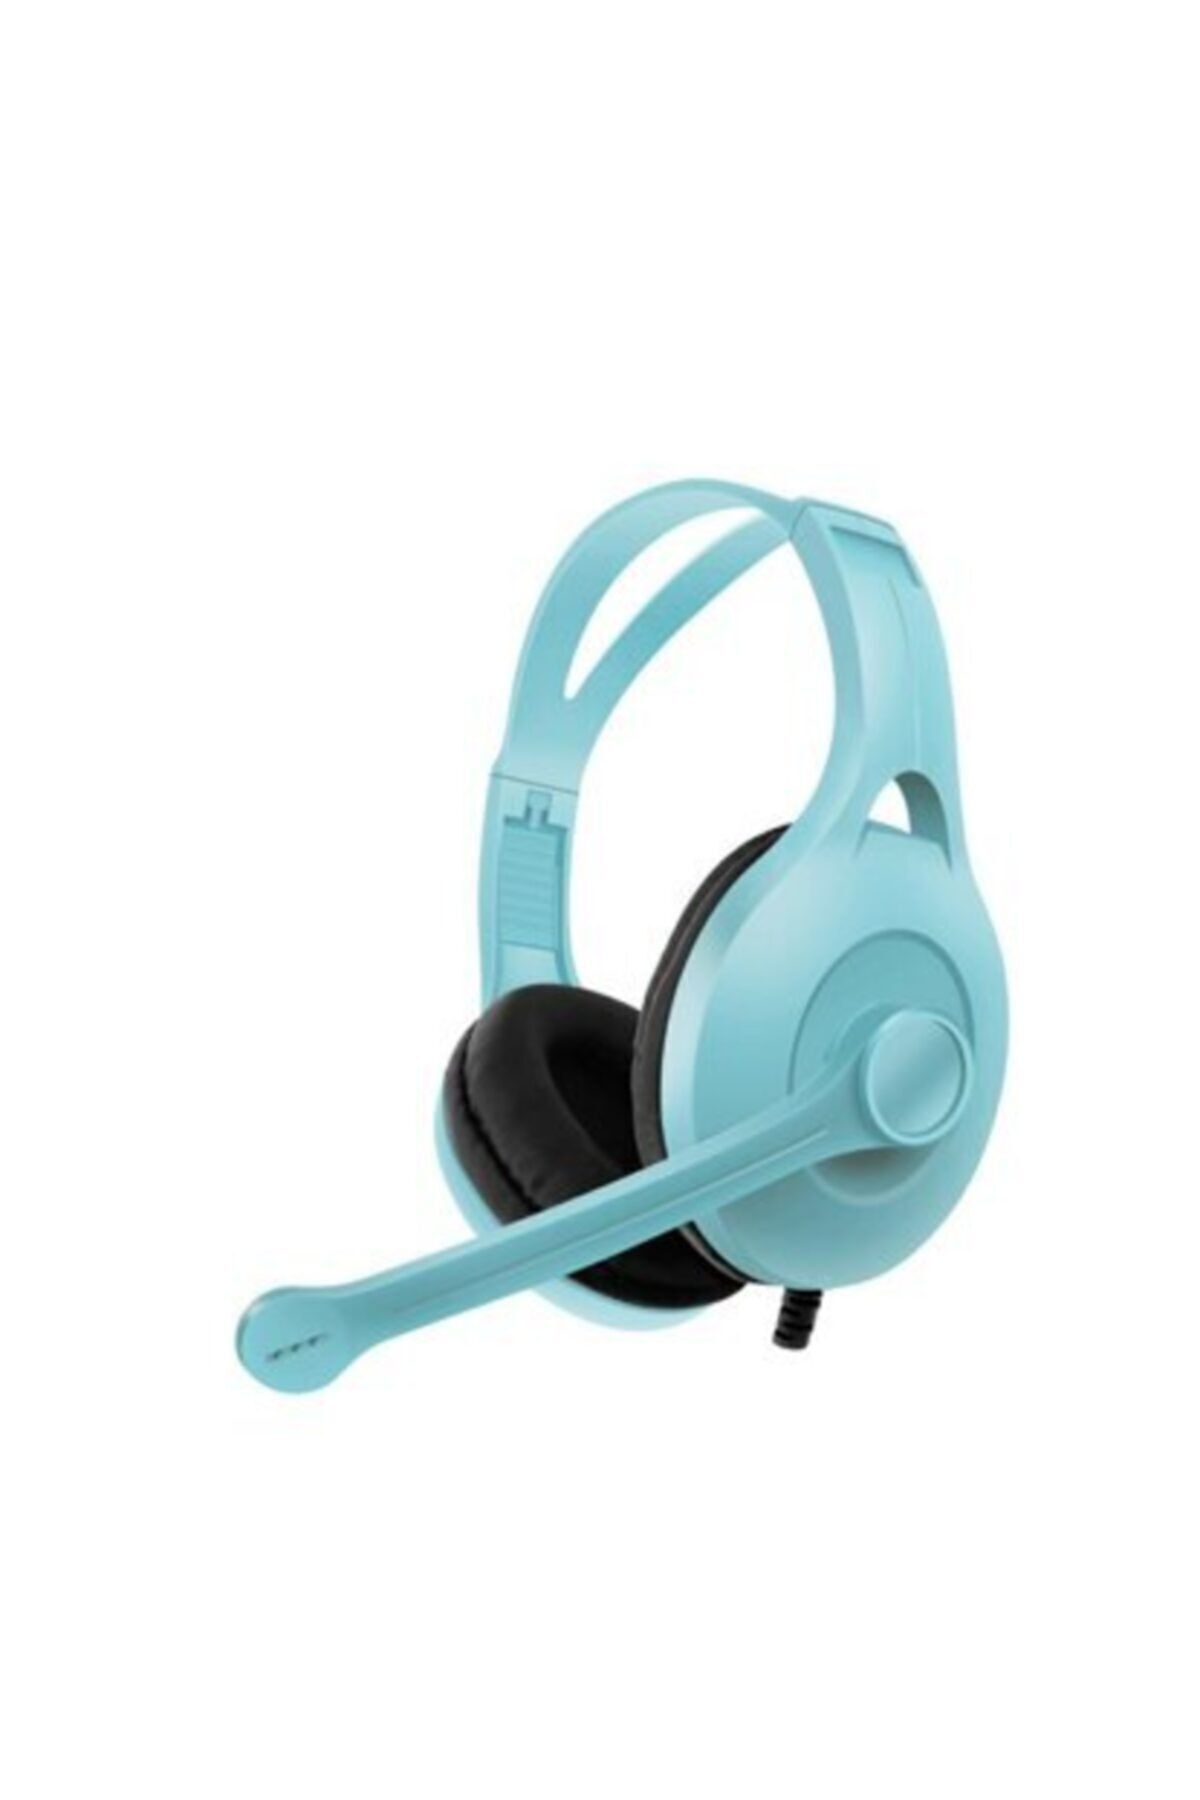 Karler Bass Kablolu Oyuncu Kulaklık Kafa Bantlı Kulak Üstü Mikrofonlu Gaming Kulaklık Cep Telefonu&tablet Uyumlu